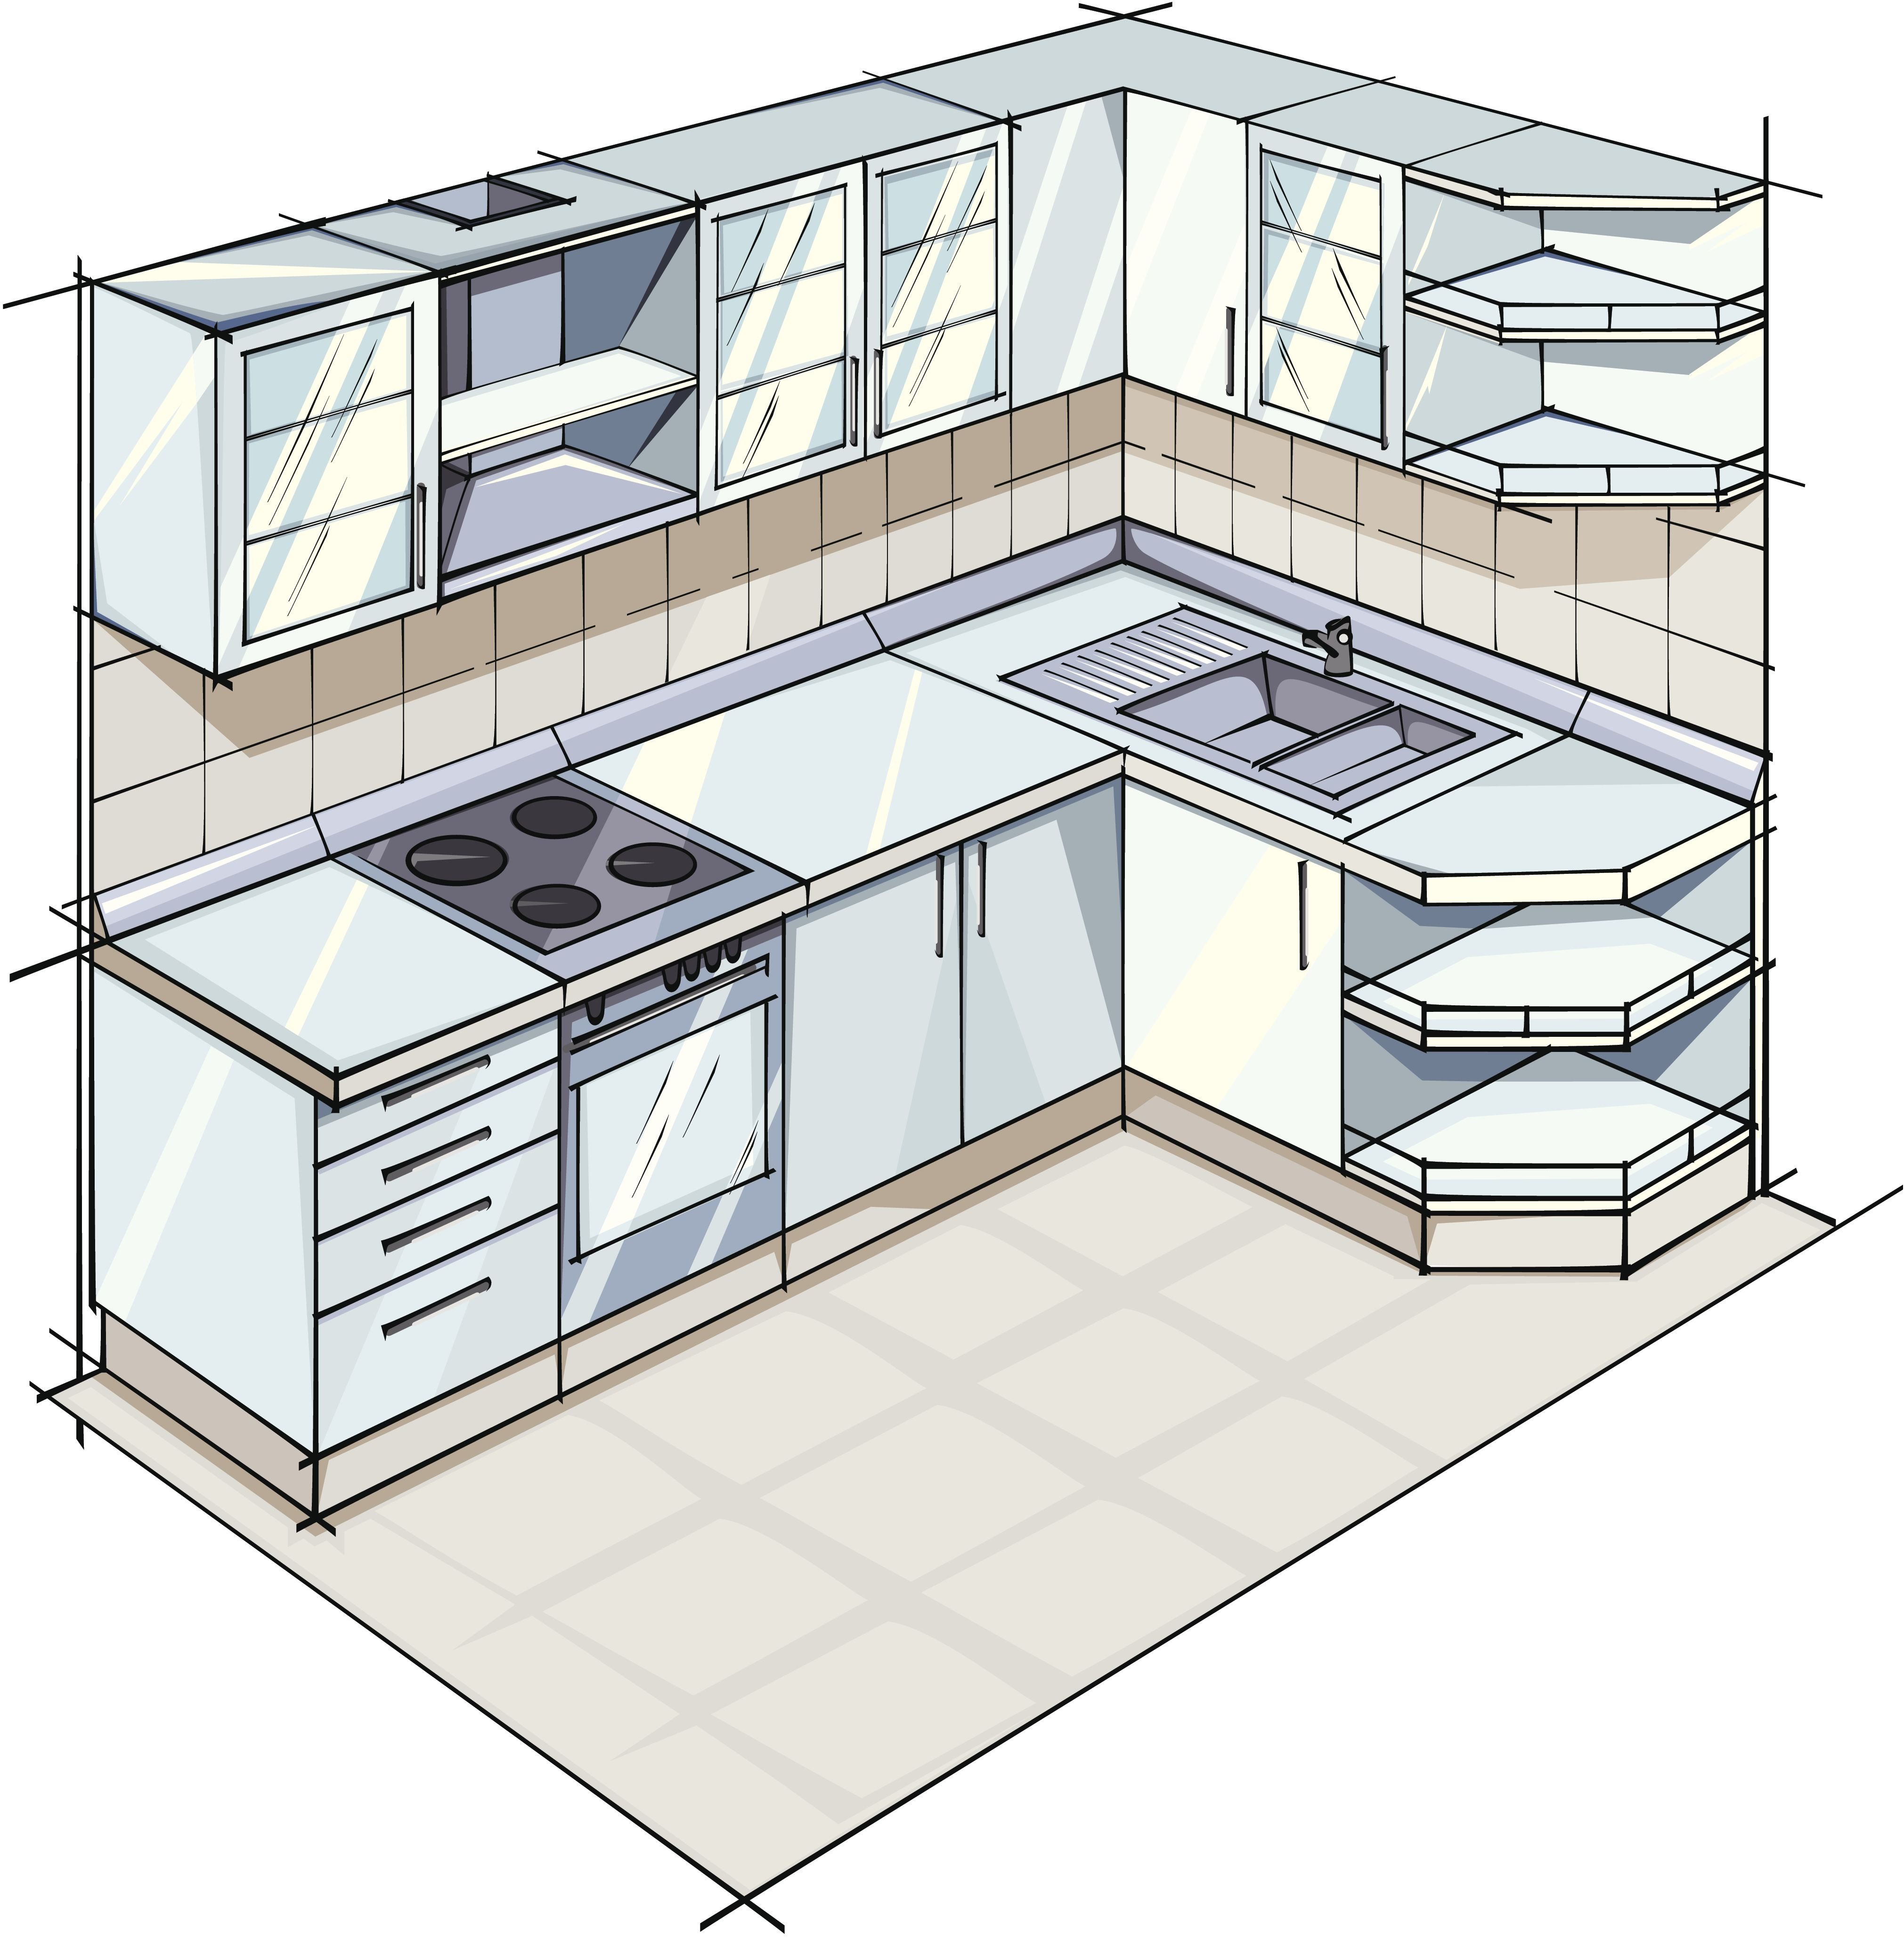 Составить план кухня. Планировка кухни. Дизайнерские проекты угловых кухонь. Проект кухни угловой. Планировка мебели на кухне.